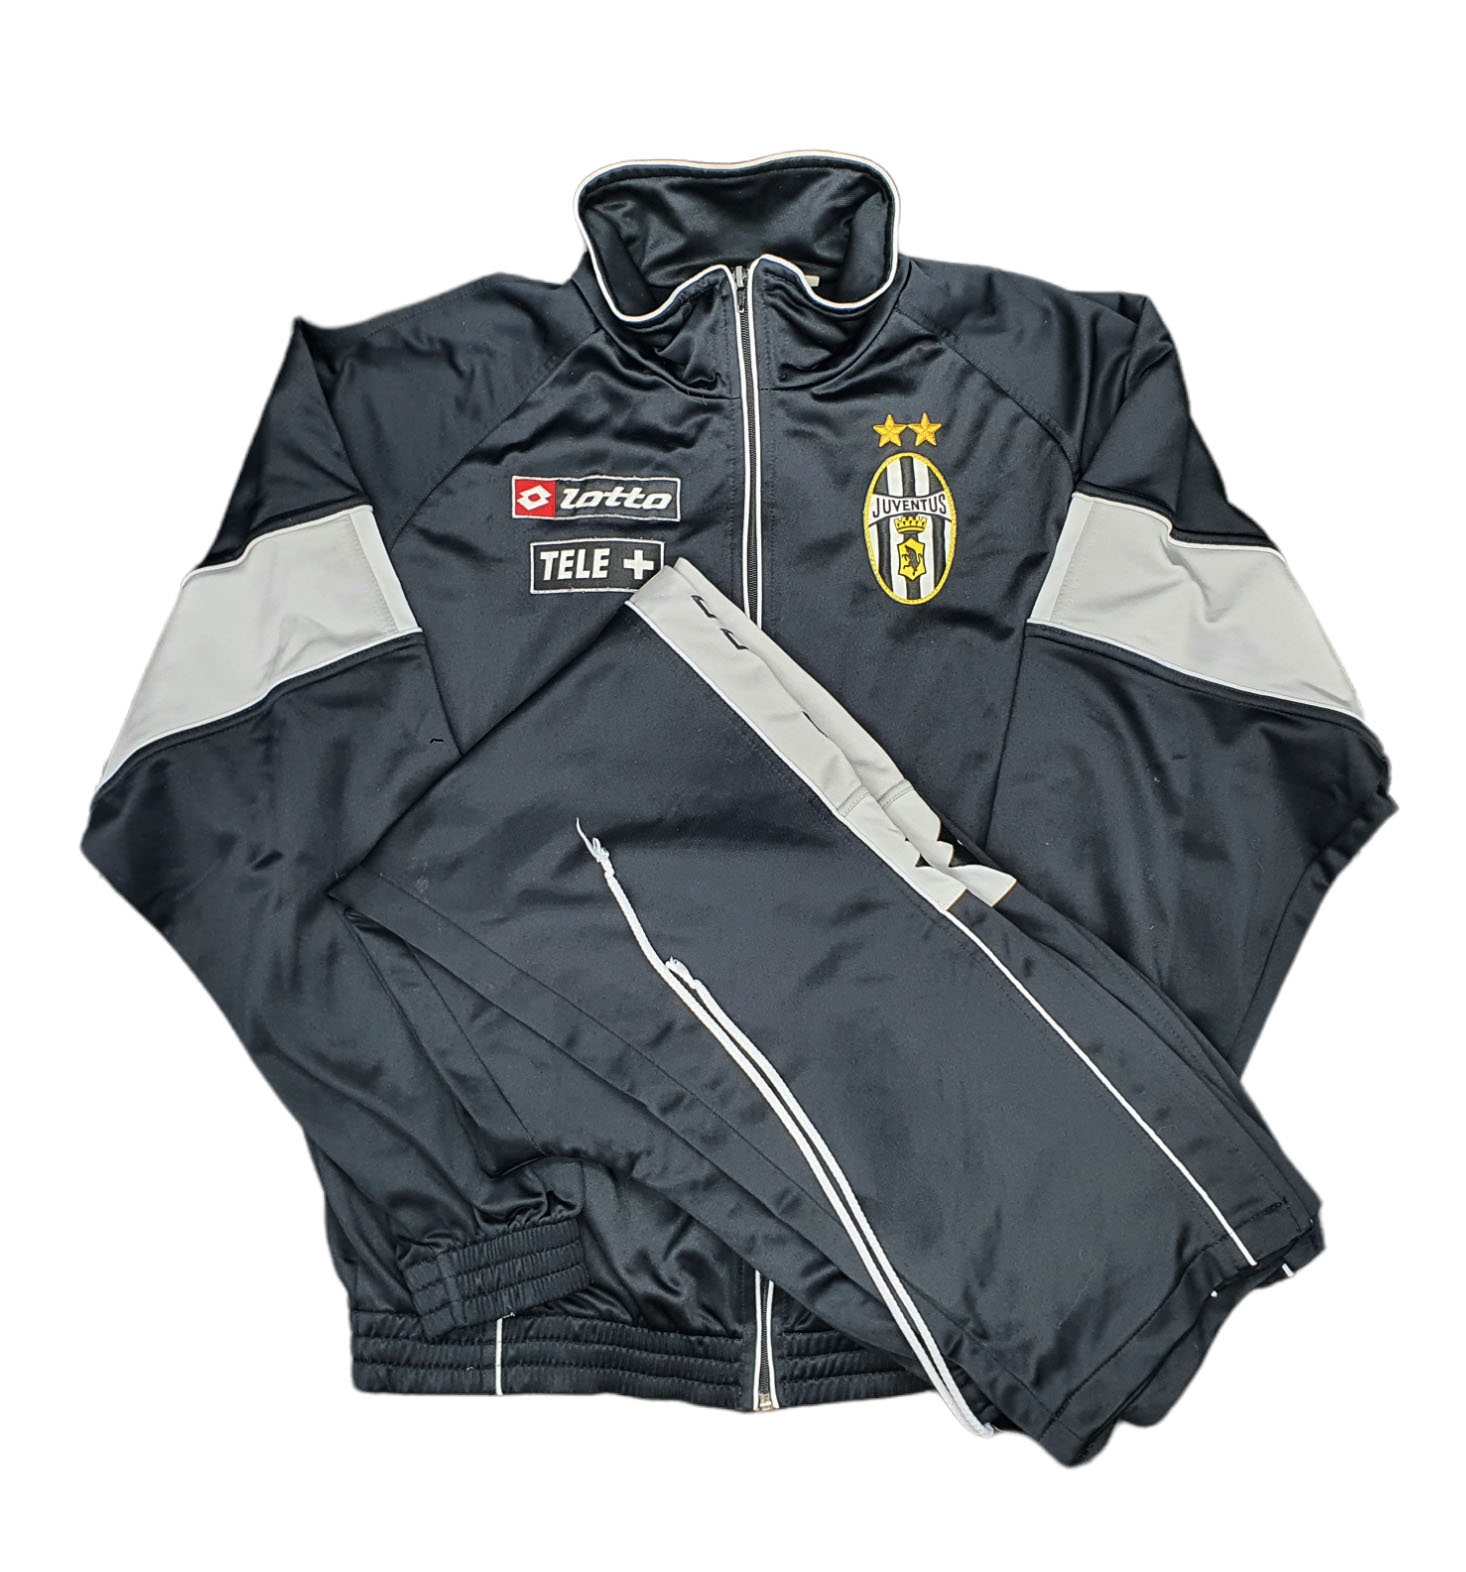 Juventus 2000-01 tuta Lotto training